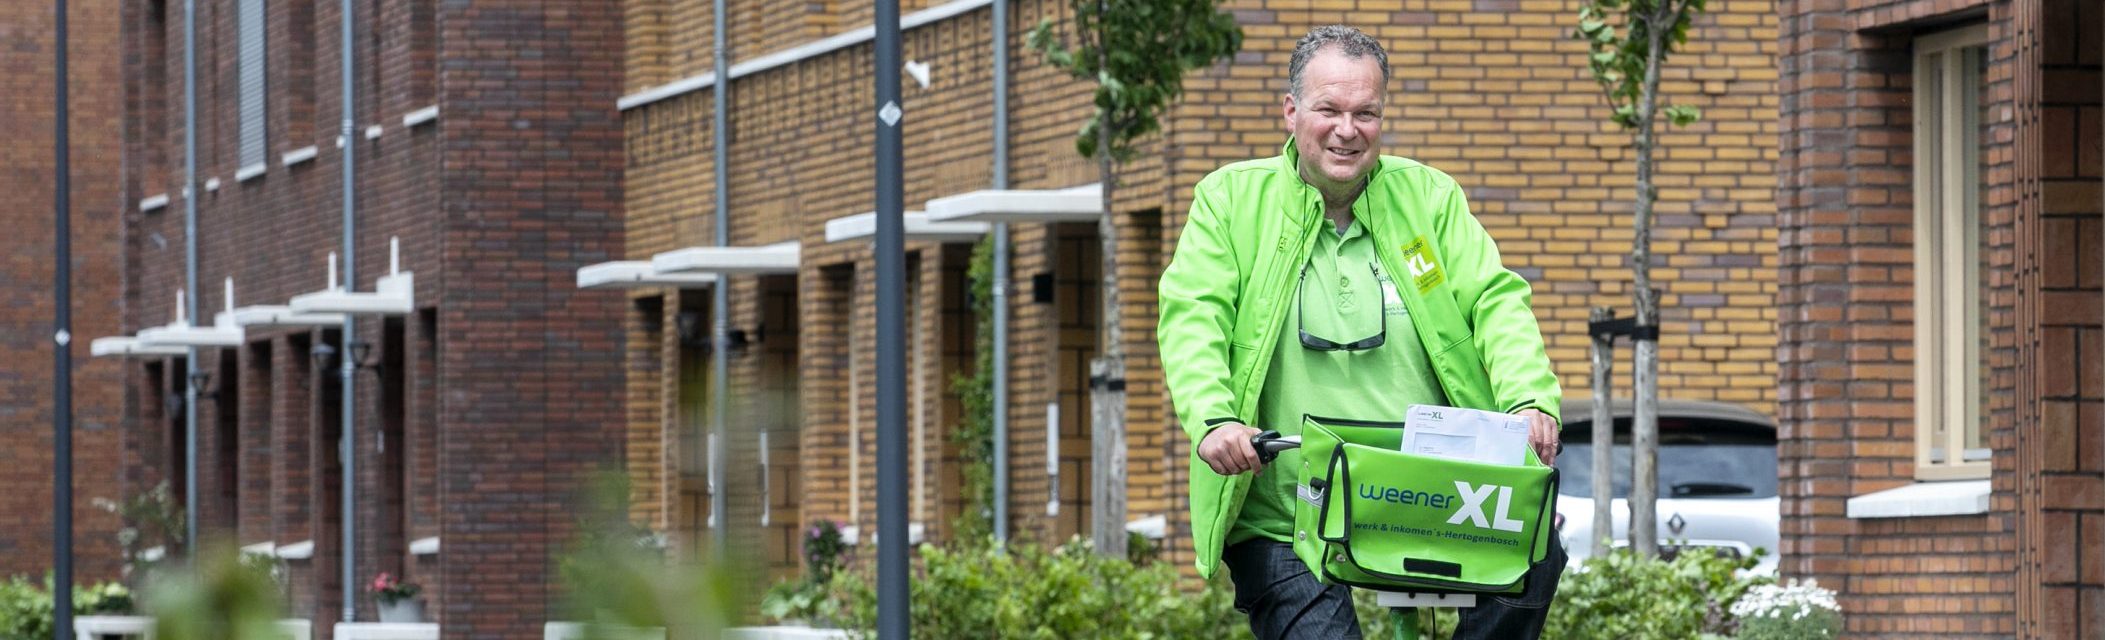 Op de foto staat een foto van collega Marcel van de Post. Hij fietst op een groene Weener XL fiets en in zijn fietstas zitten poststukken